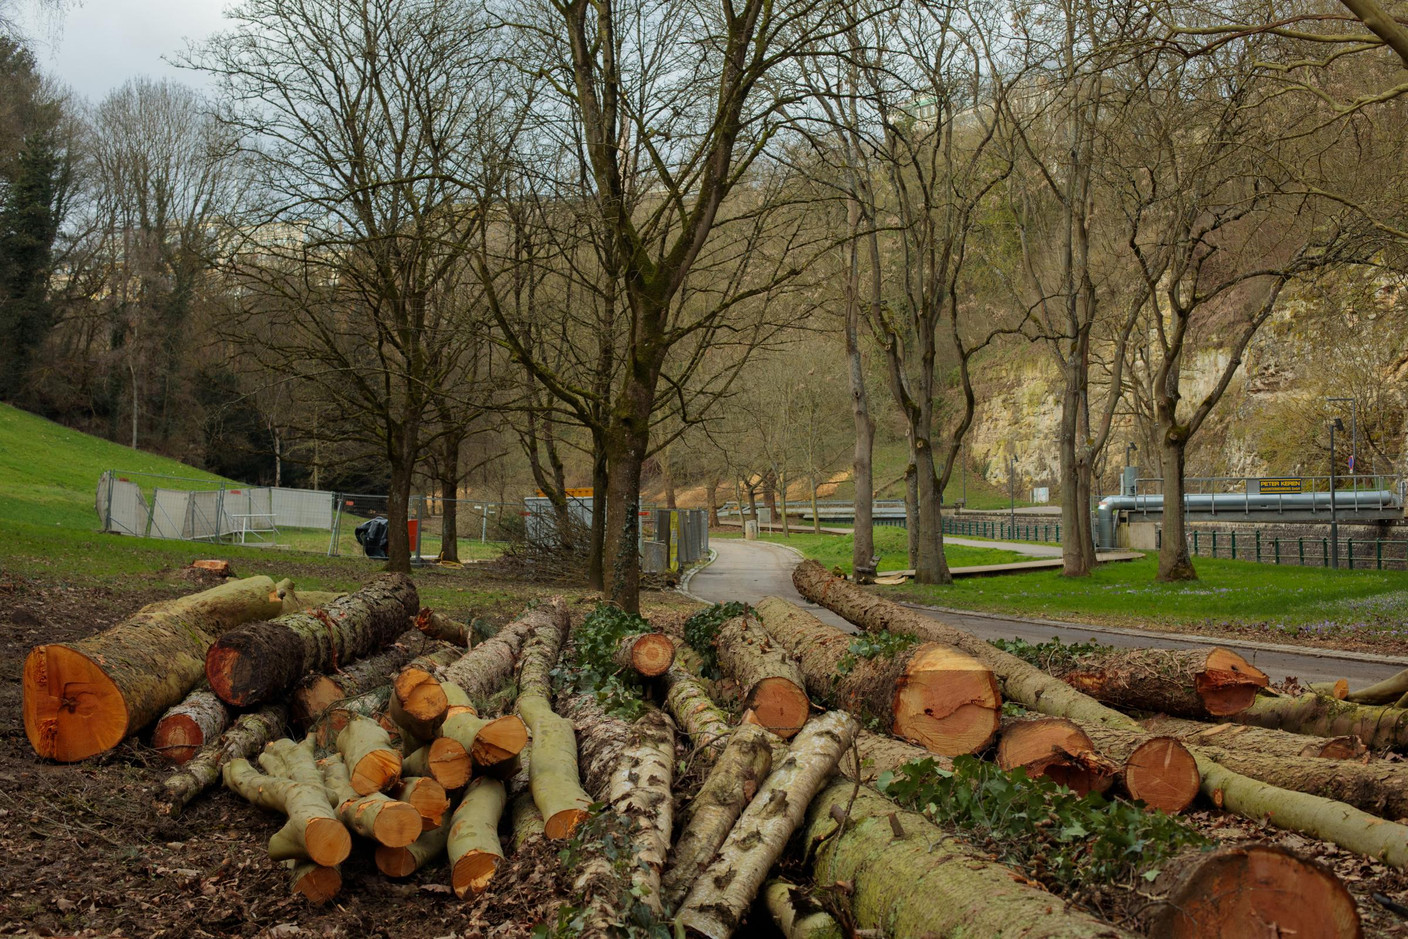 Pour retravailler les berges, il est nécessaire d’abattre quelques arbres, qui seront remplacés par la suite. (Photo: Matic Zorman / Maison Moderne)